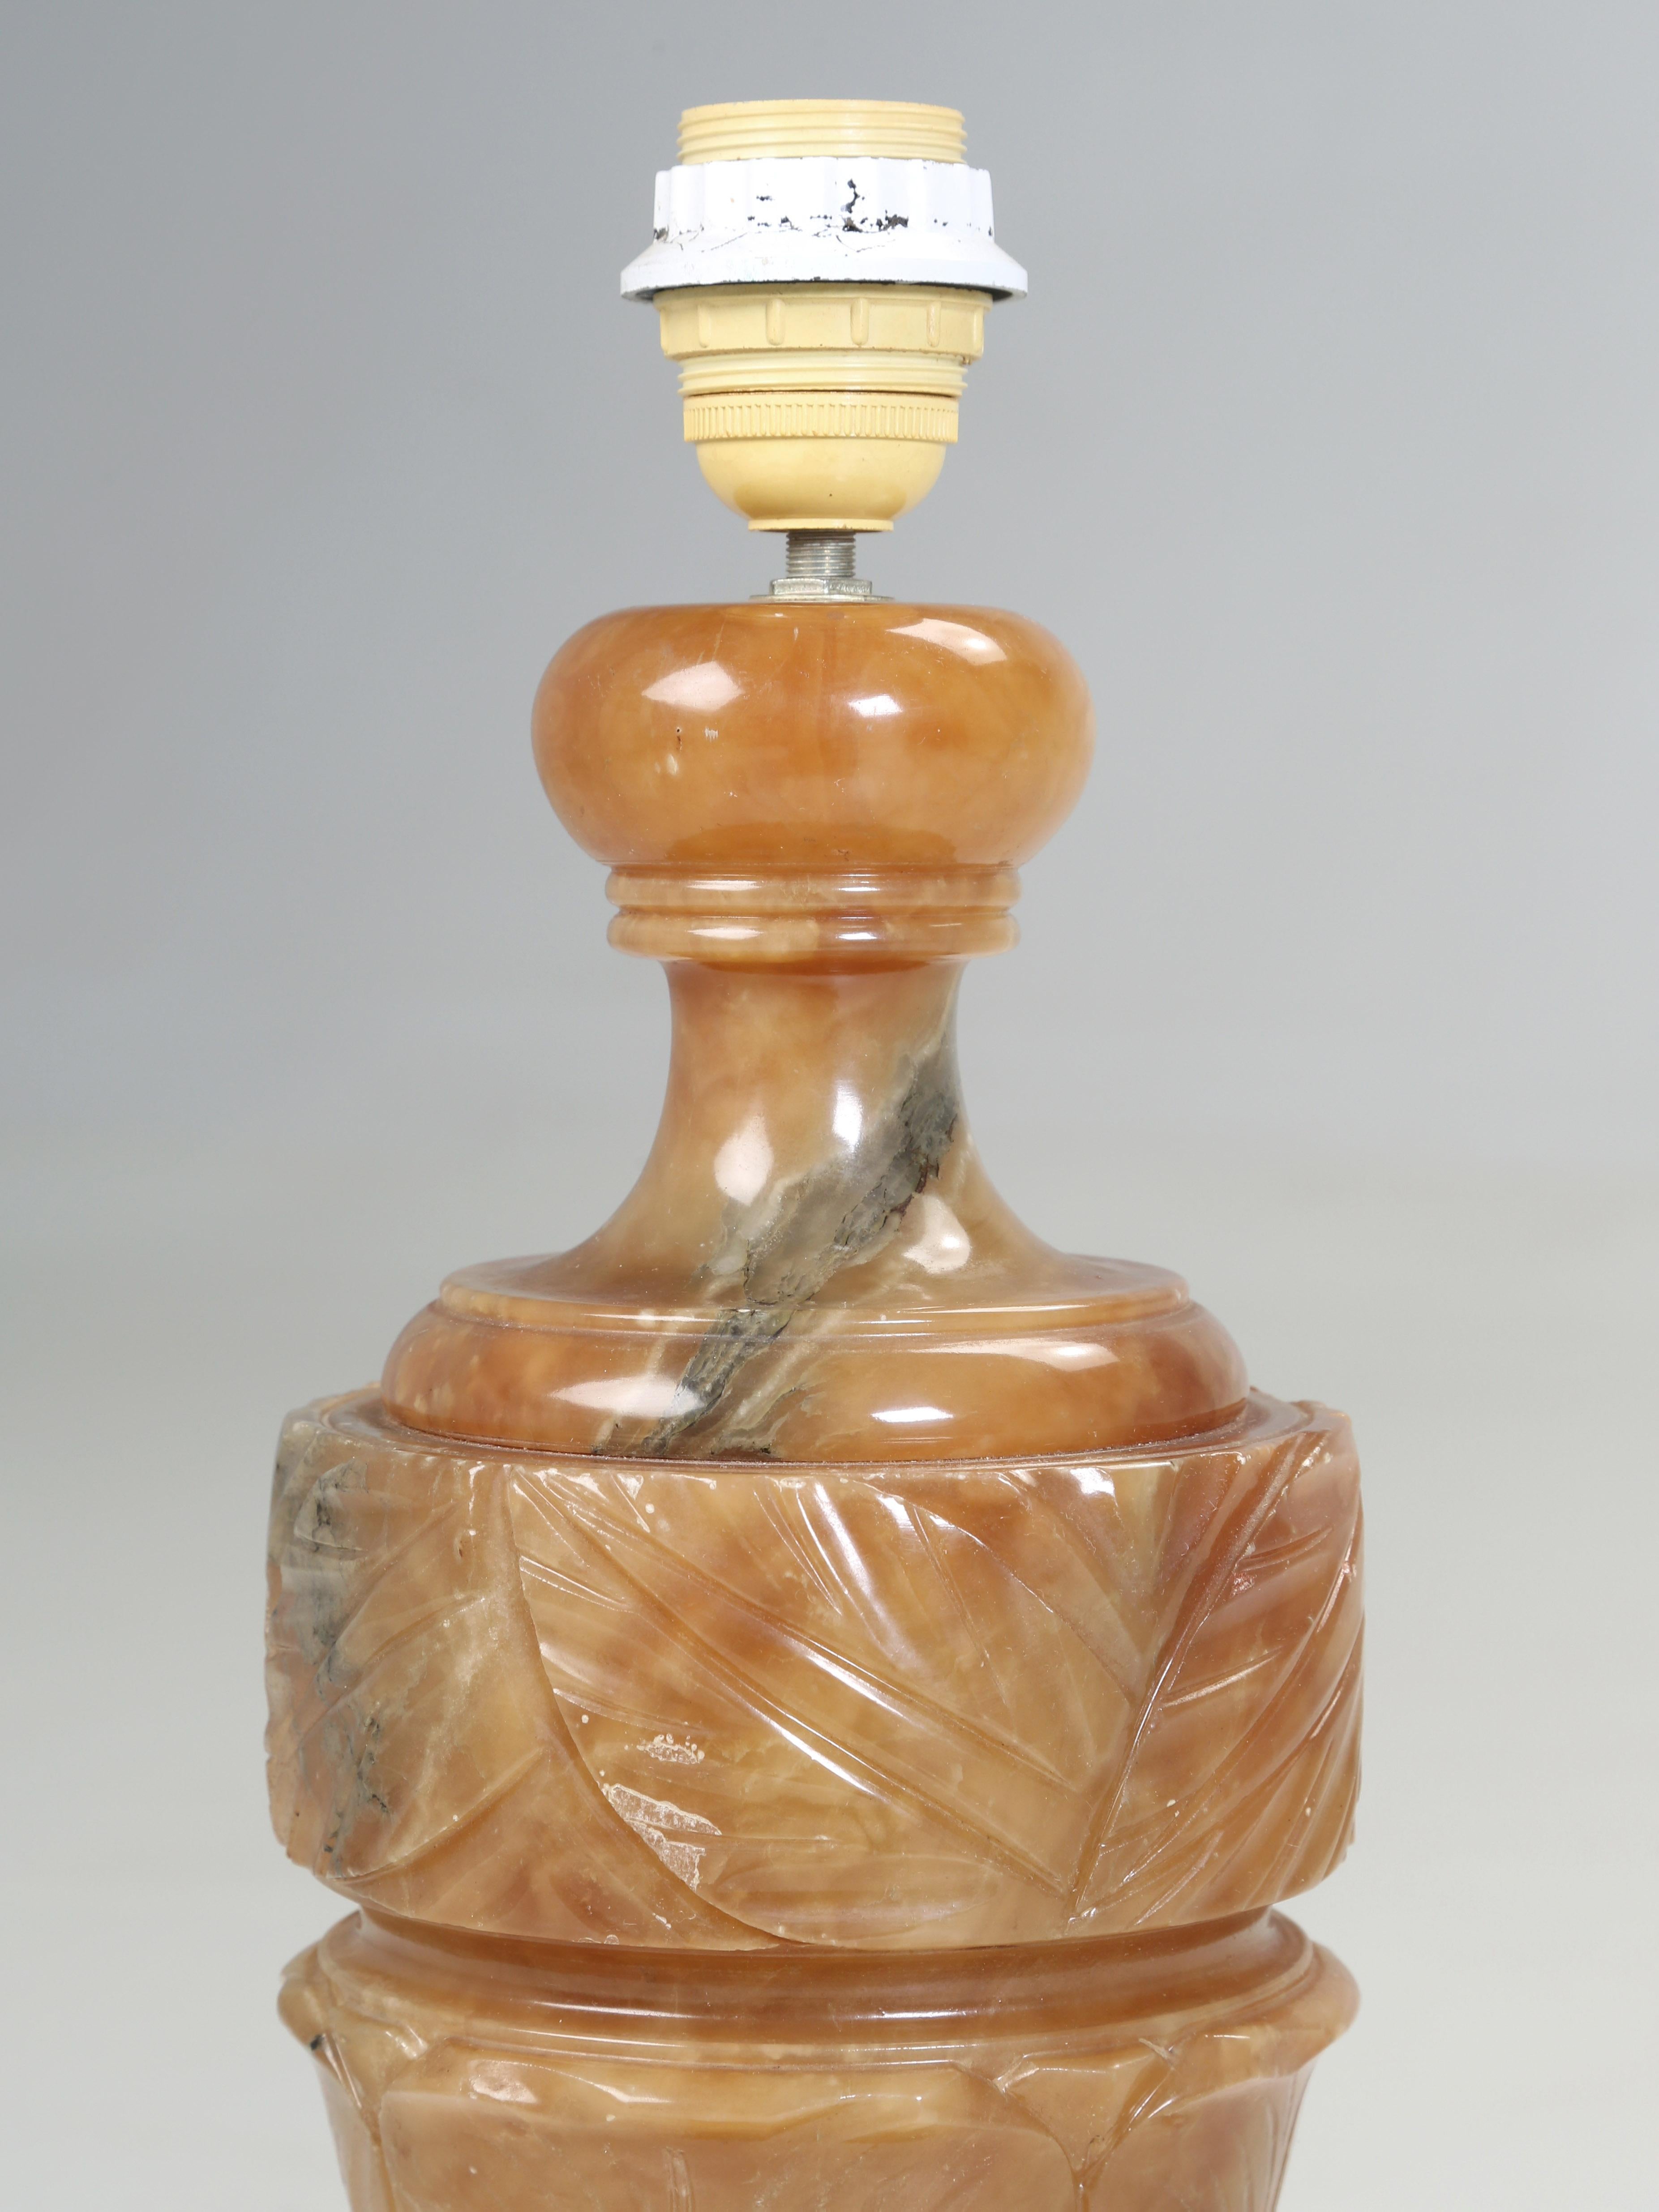 Schöne handgeschnitzte Alabaster-Lampe aus Frankreich importiert und erfordert Umverdrahtung für die USA.
Den Stein Alabaster gibt es in verschiedenen Farben, die aber meist weiß, gelb oder orange sind. Das Mineral ist ideal für die Schnitzerei, da